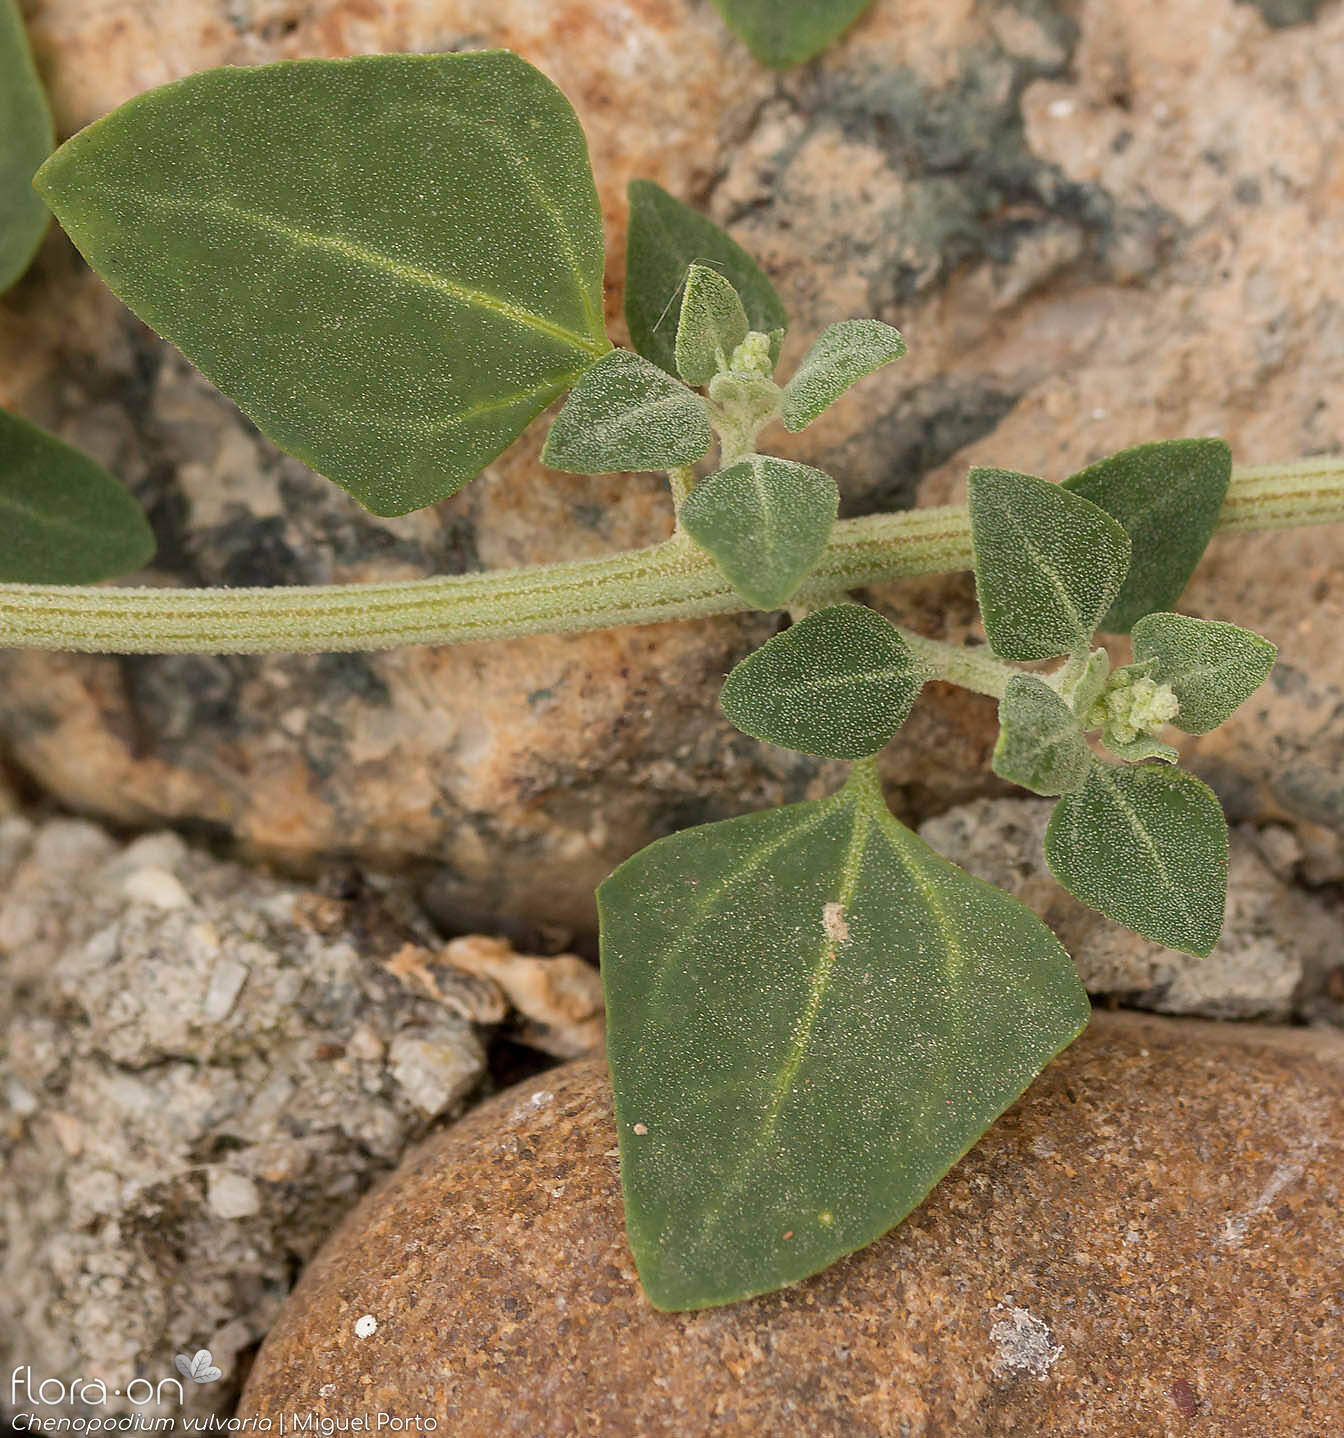 Chenopodium vulvaria - Folha (geral) | Miguel Porto; CC BY-NC 4.0